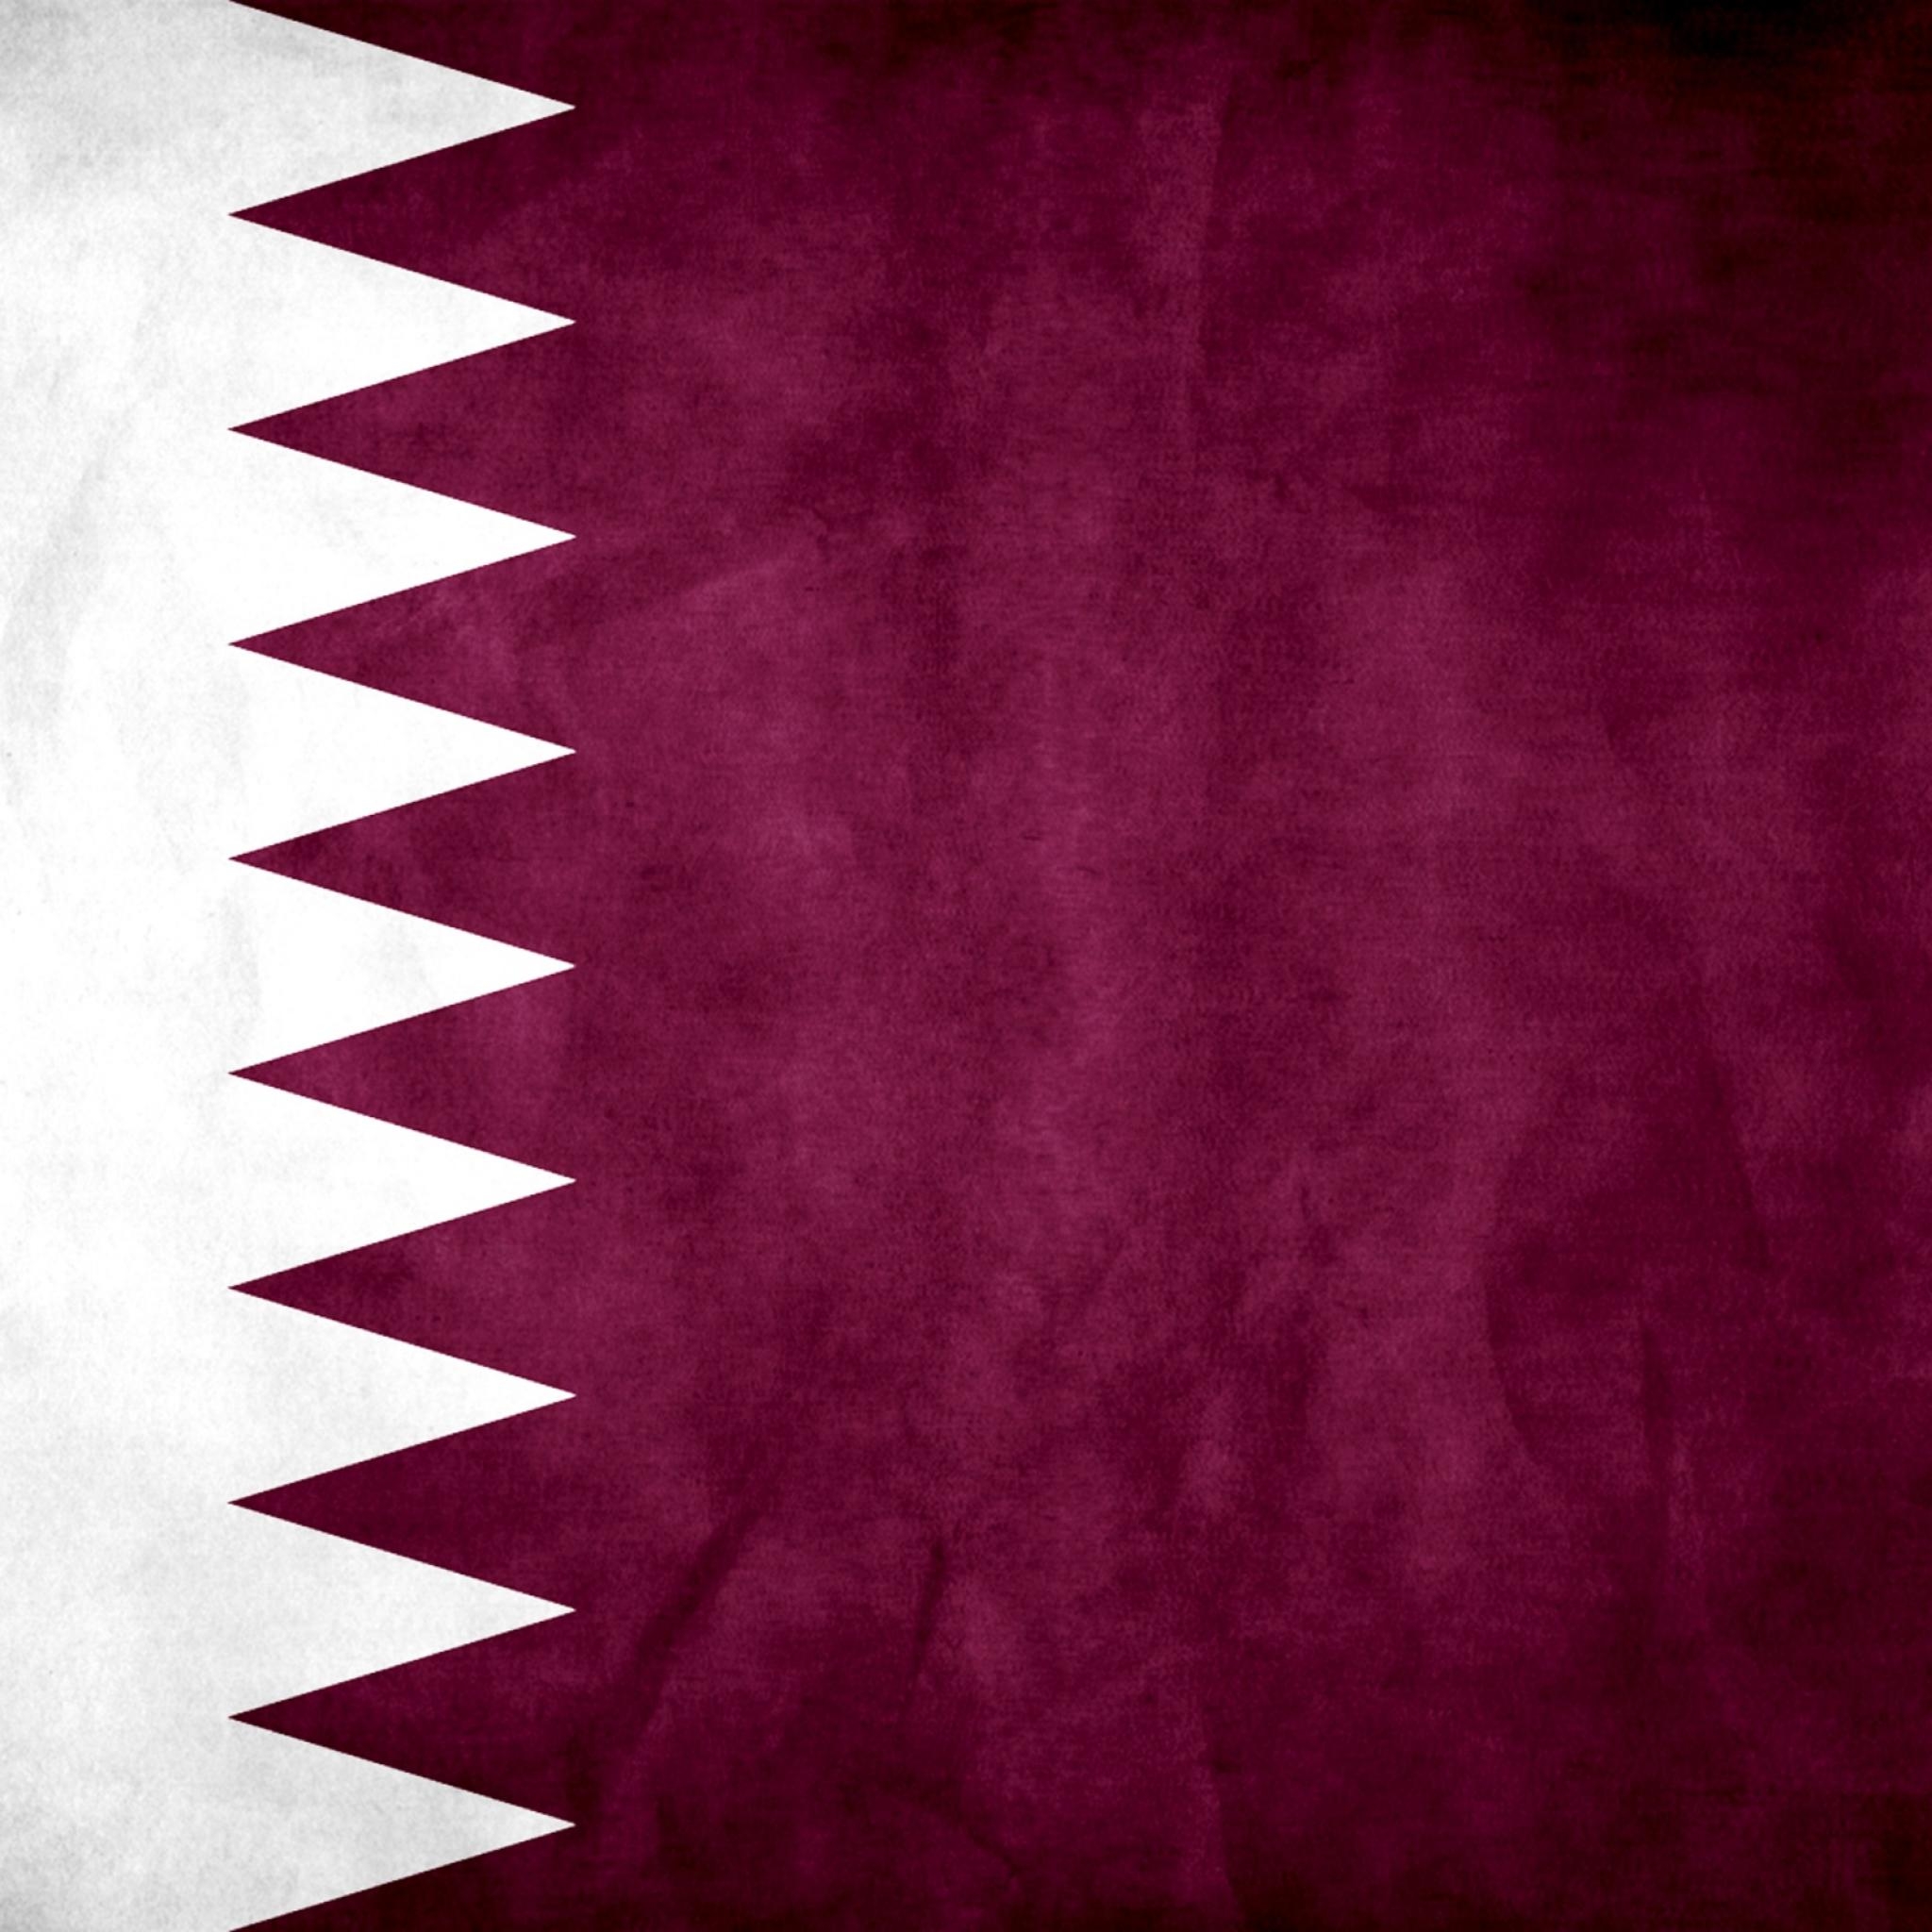 Qatari Flag IPad Air Pro Wallpaper And IPad Mini Wallpaper